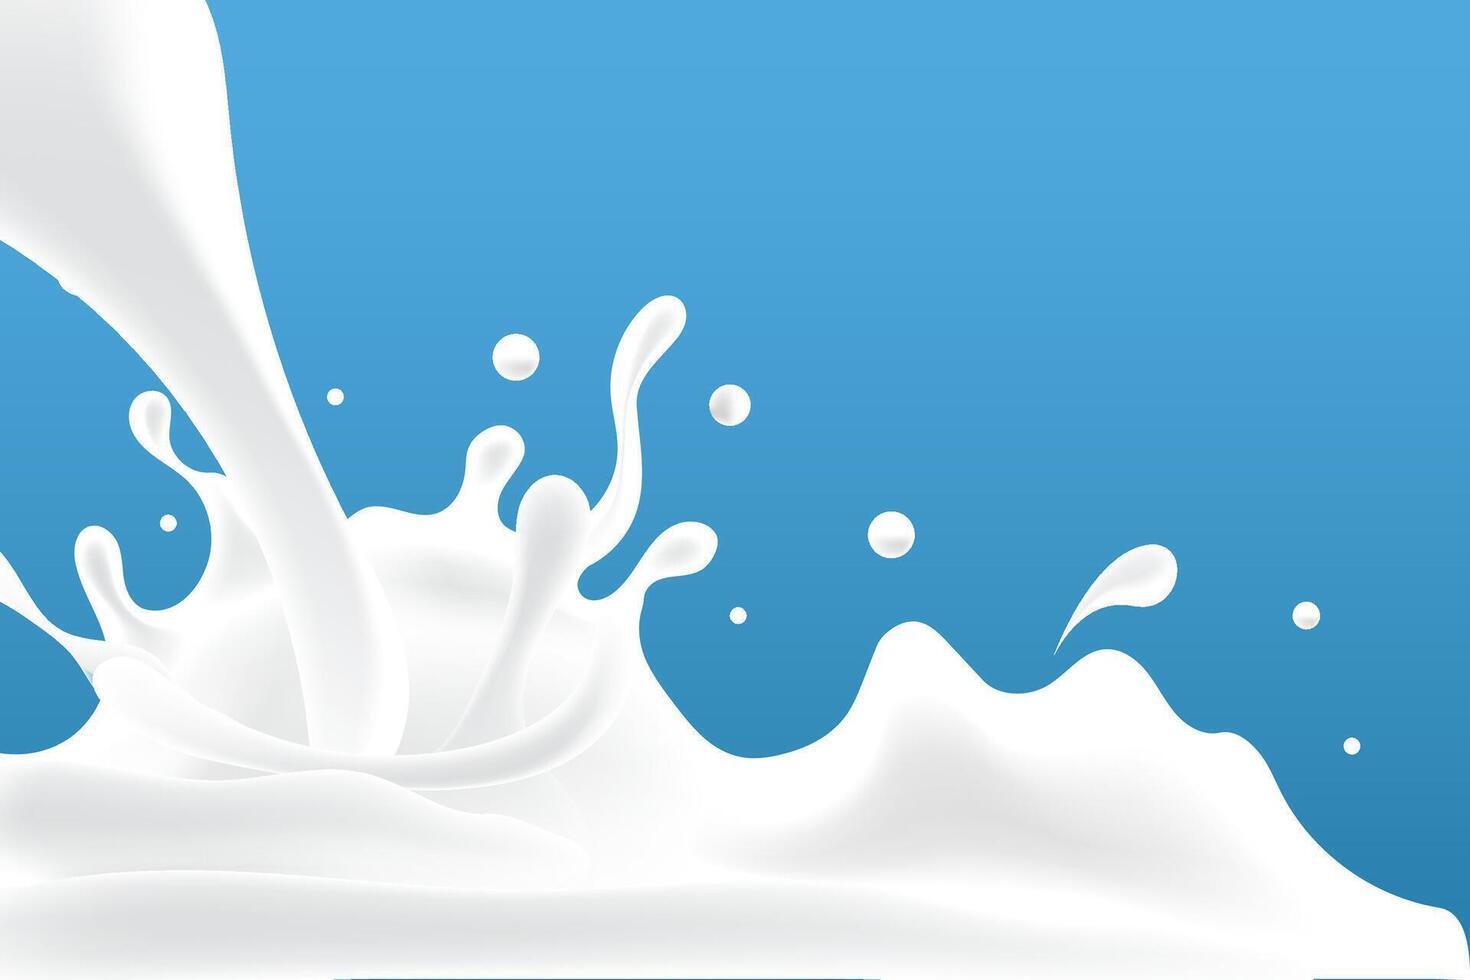 latteo onde sfondo. addizionale elementi di latte design vettore